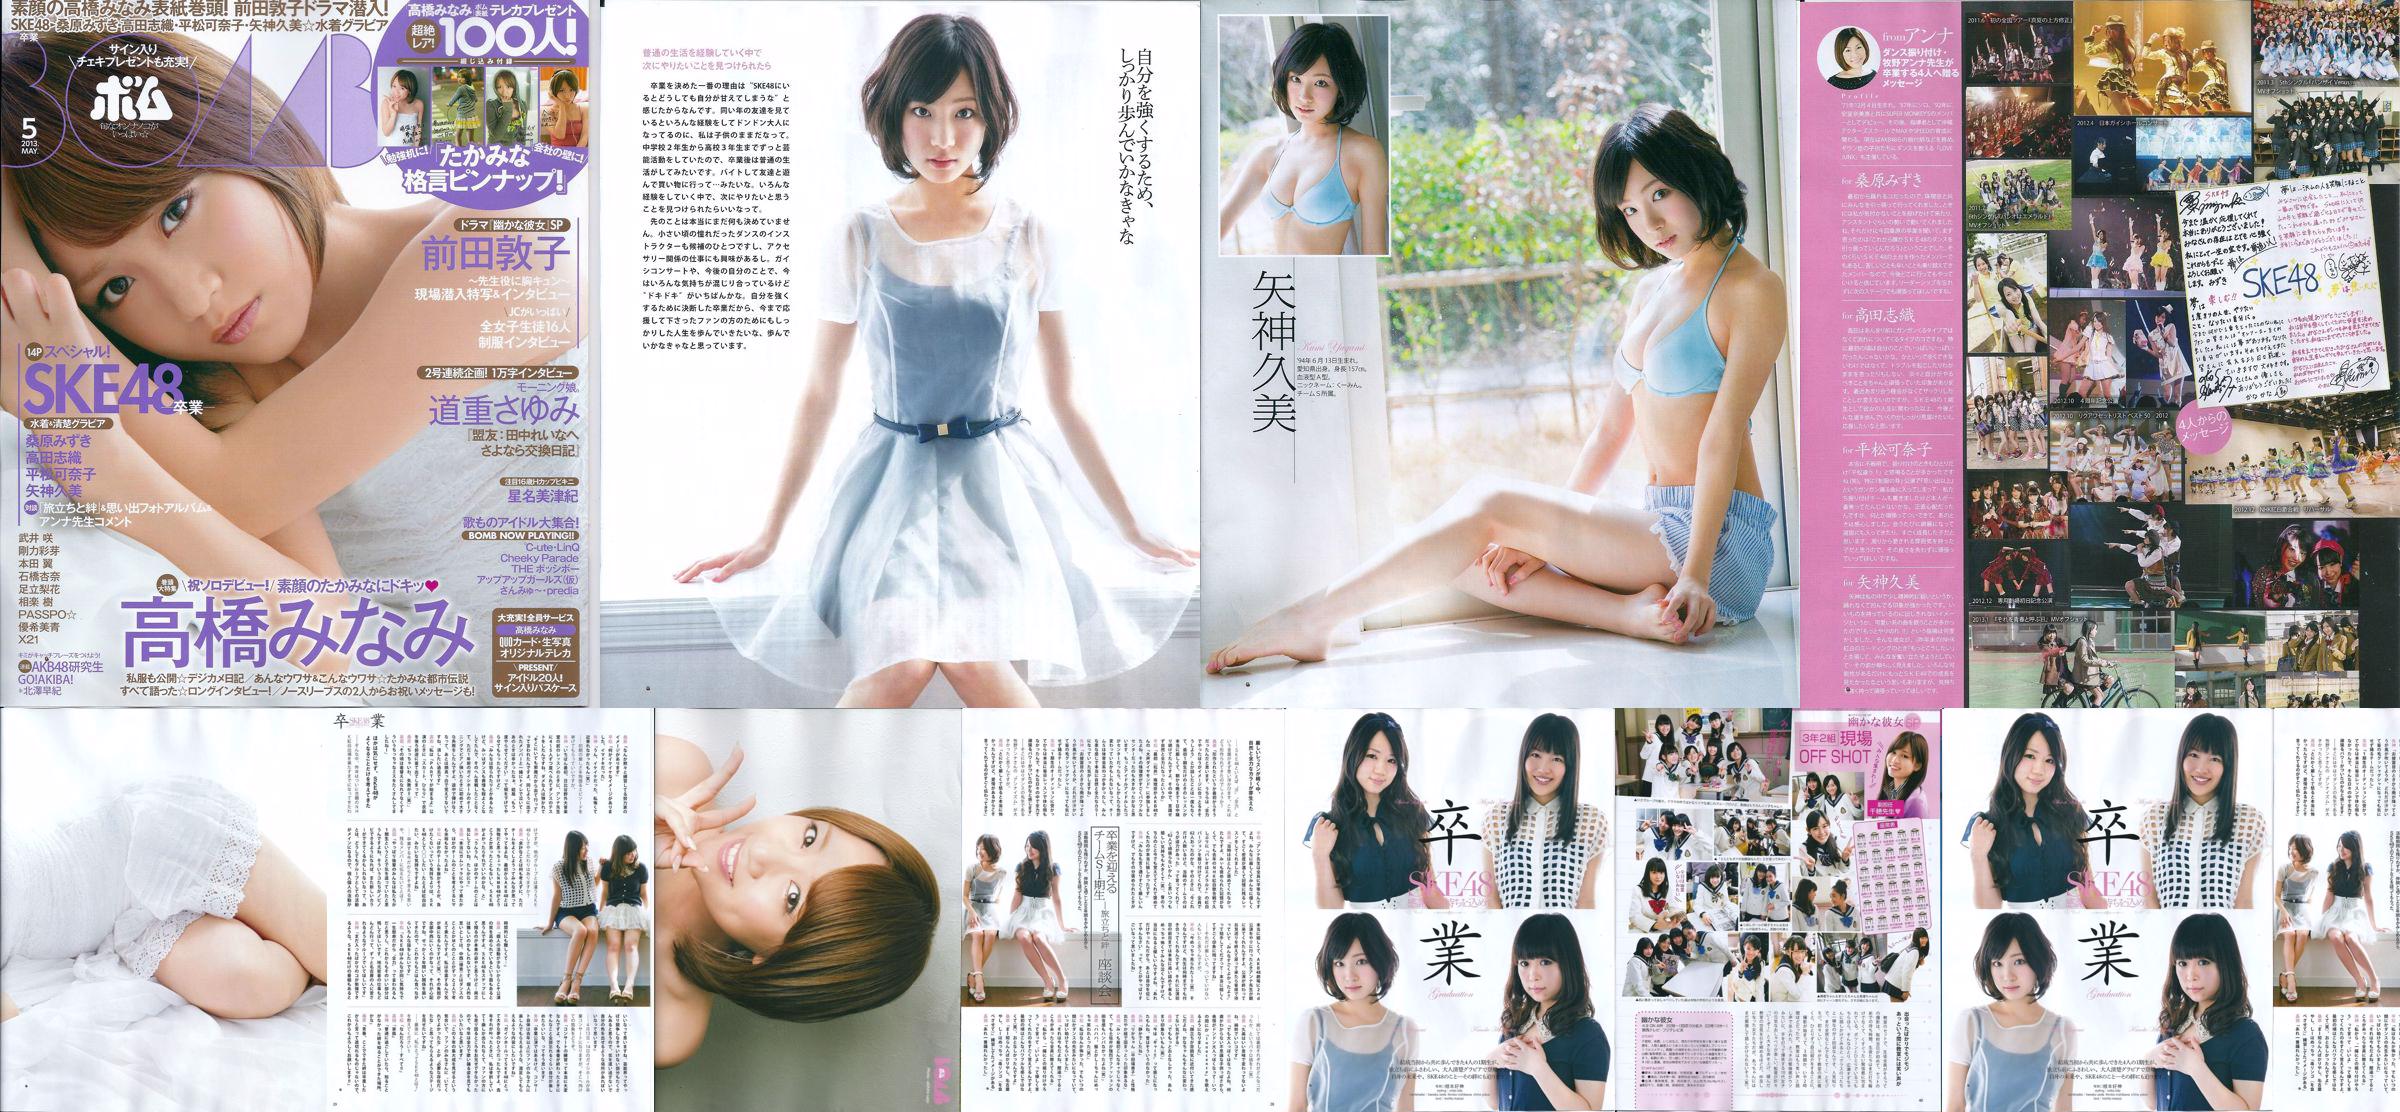 [Bomb Magazine] 2013 No.05 Kumi Yagami Minami Takahashi Atsuko Maeda Photo No.a9bb13 Page 5